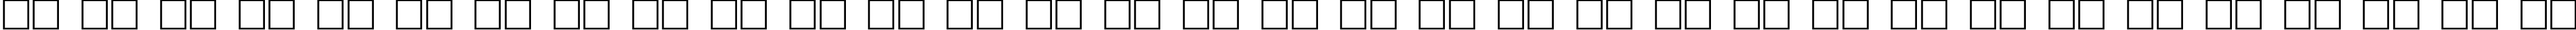 Пример написания русского алфавита шрифтом Shadowed Serif